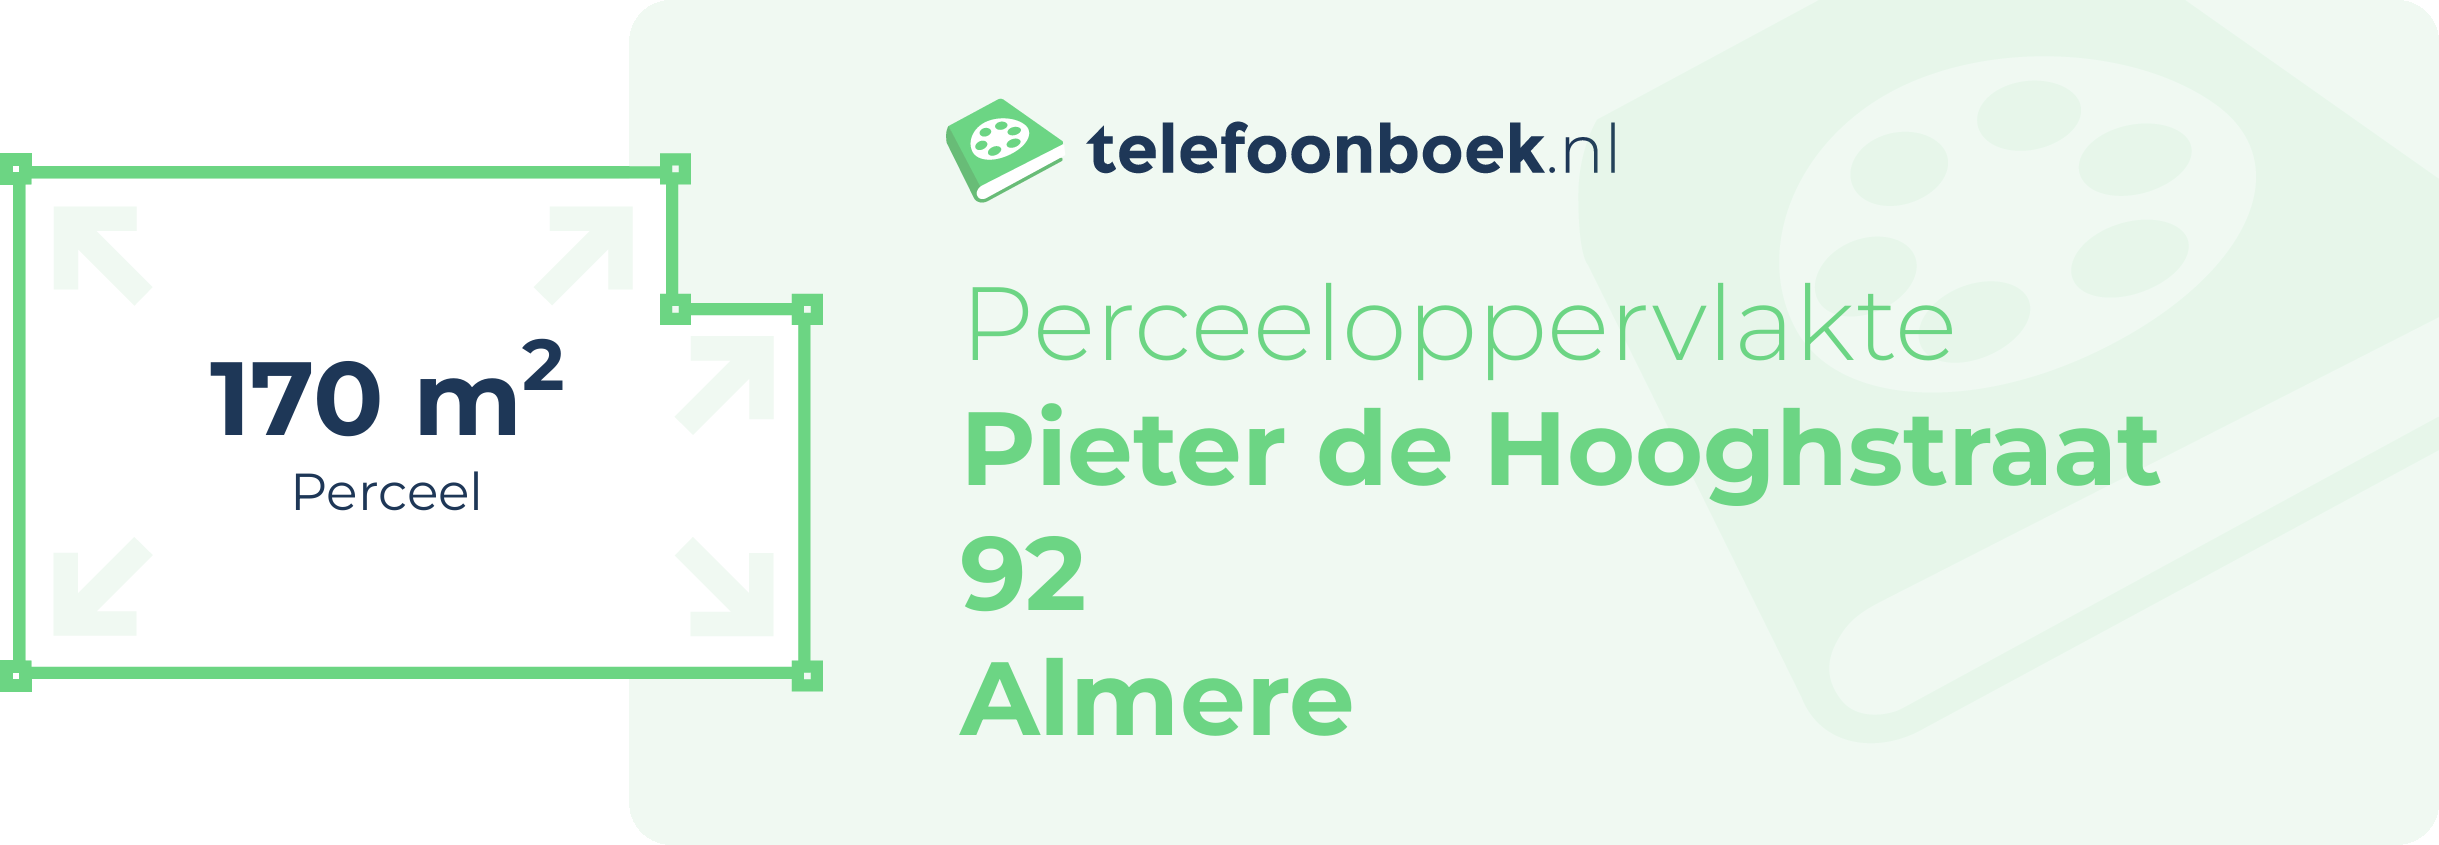 Perceeloppervlakte Pieter De Hooghstraat 92 Almere